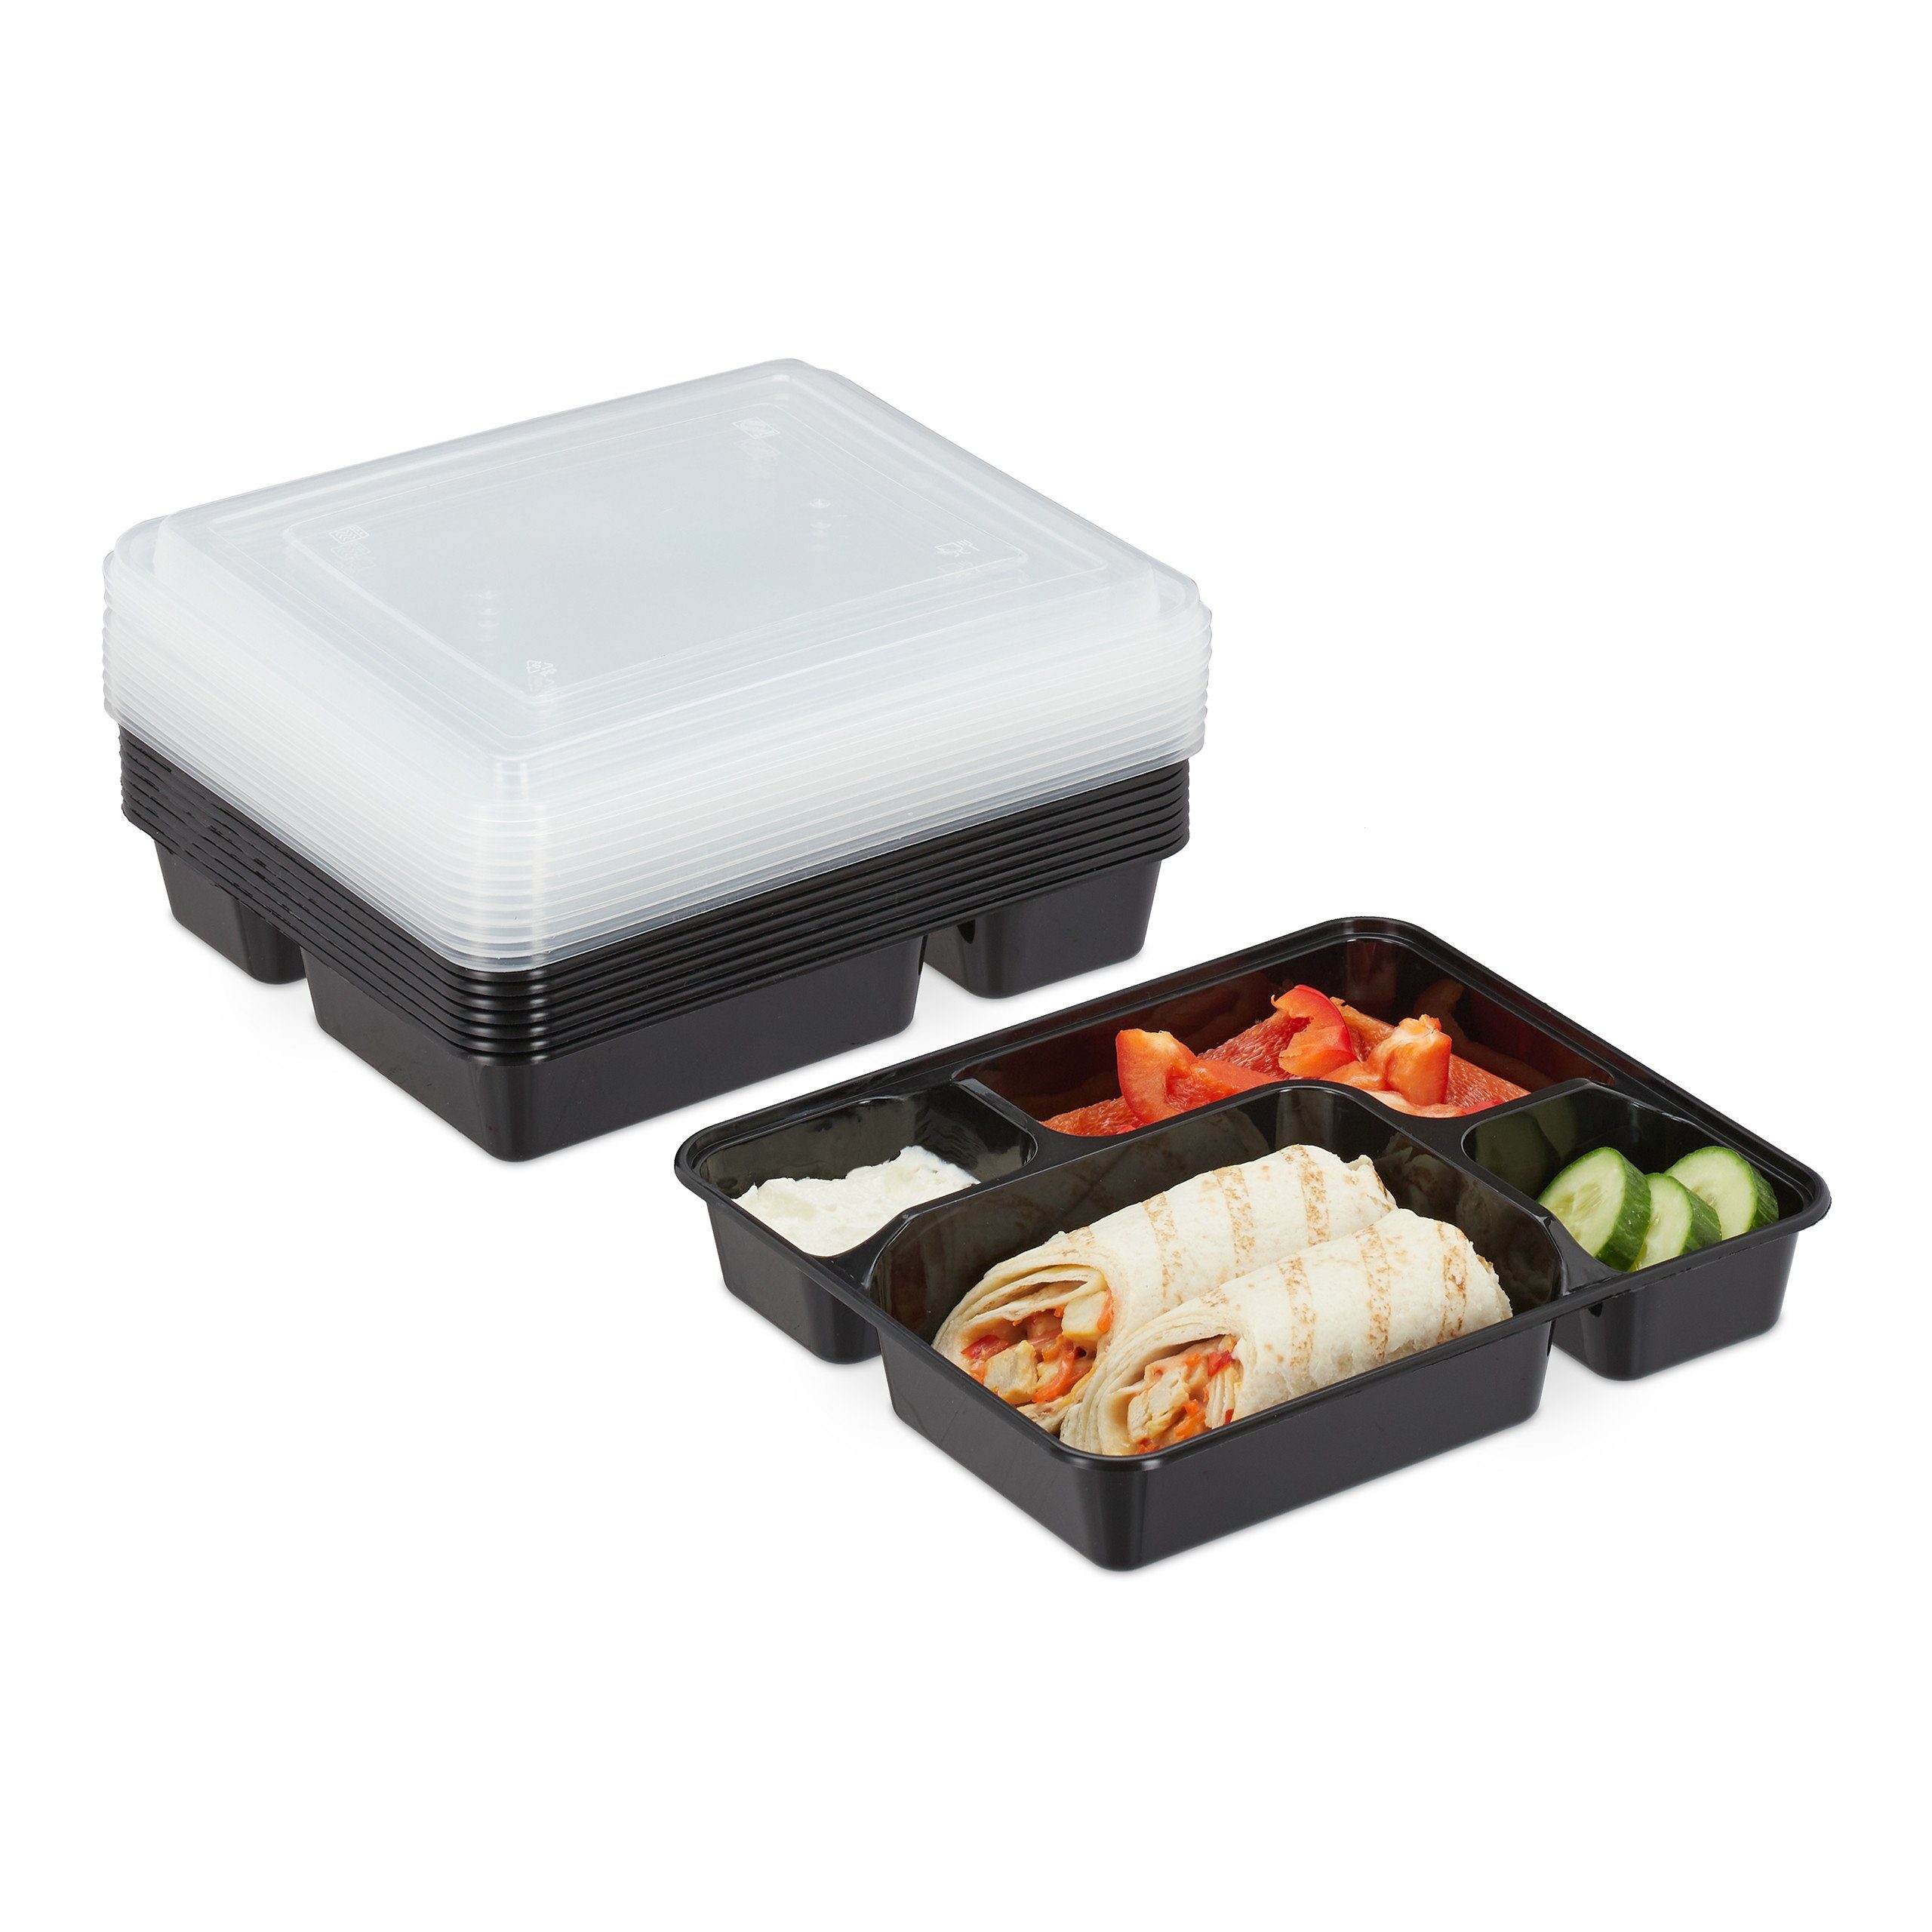 relaxdays Lunchbox 10er Set Meal Prep Одежда и товары для бокса 4 Fächer, Kunststoff